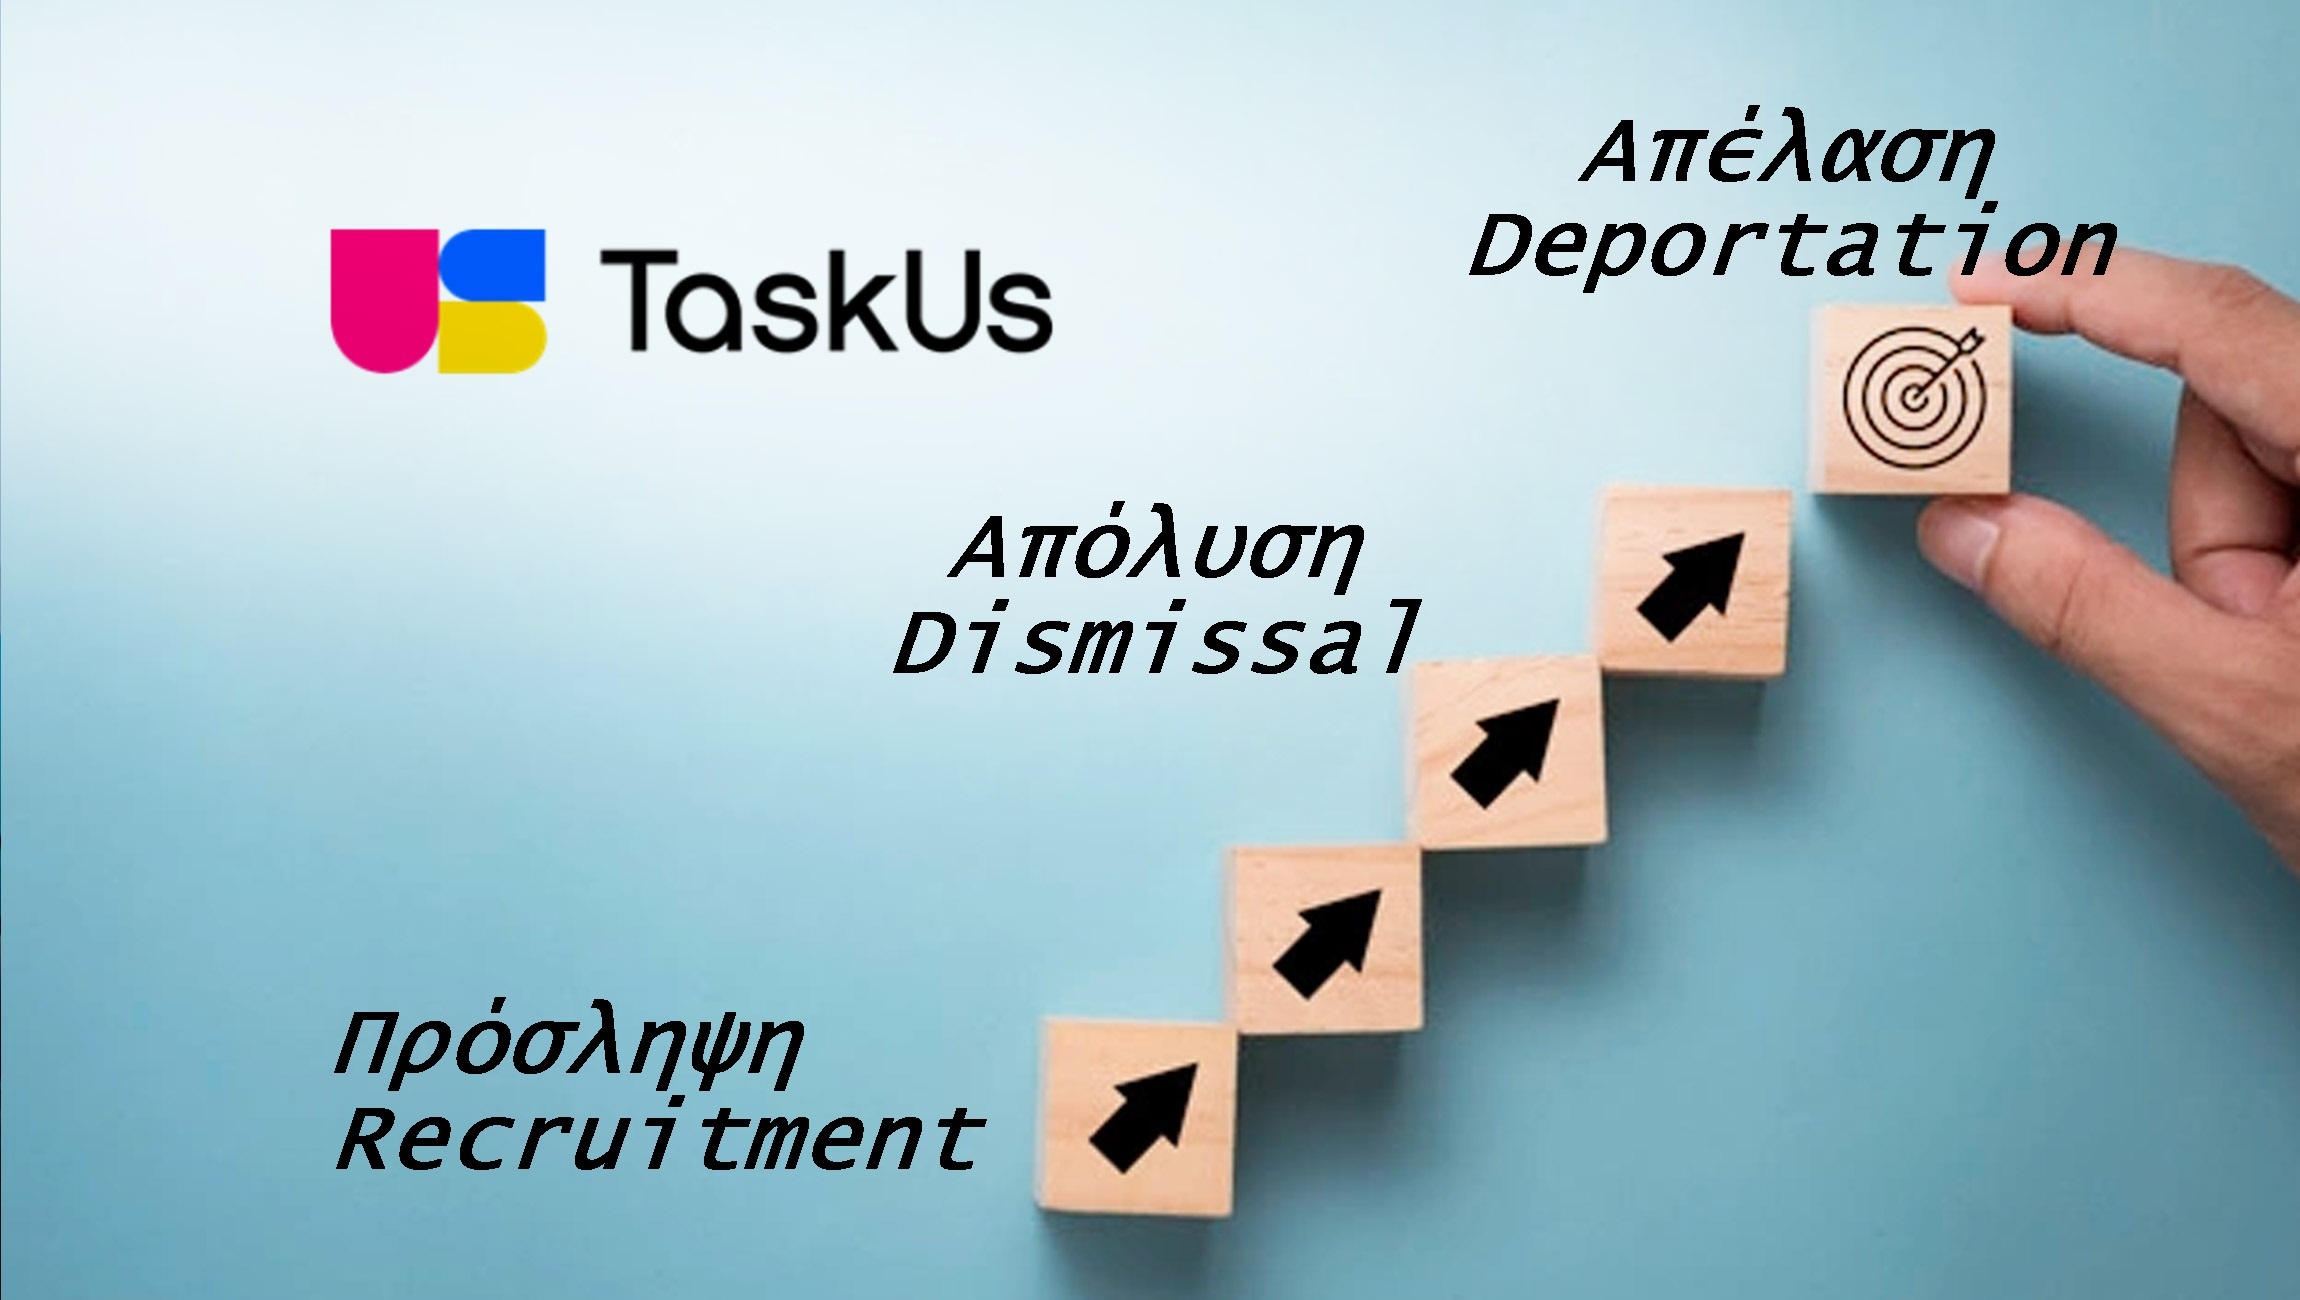 TaskUs